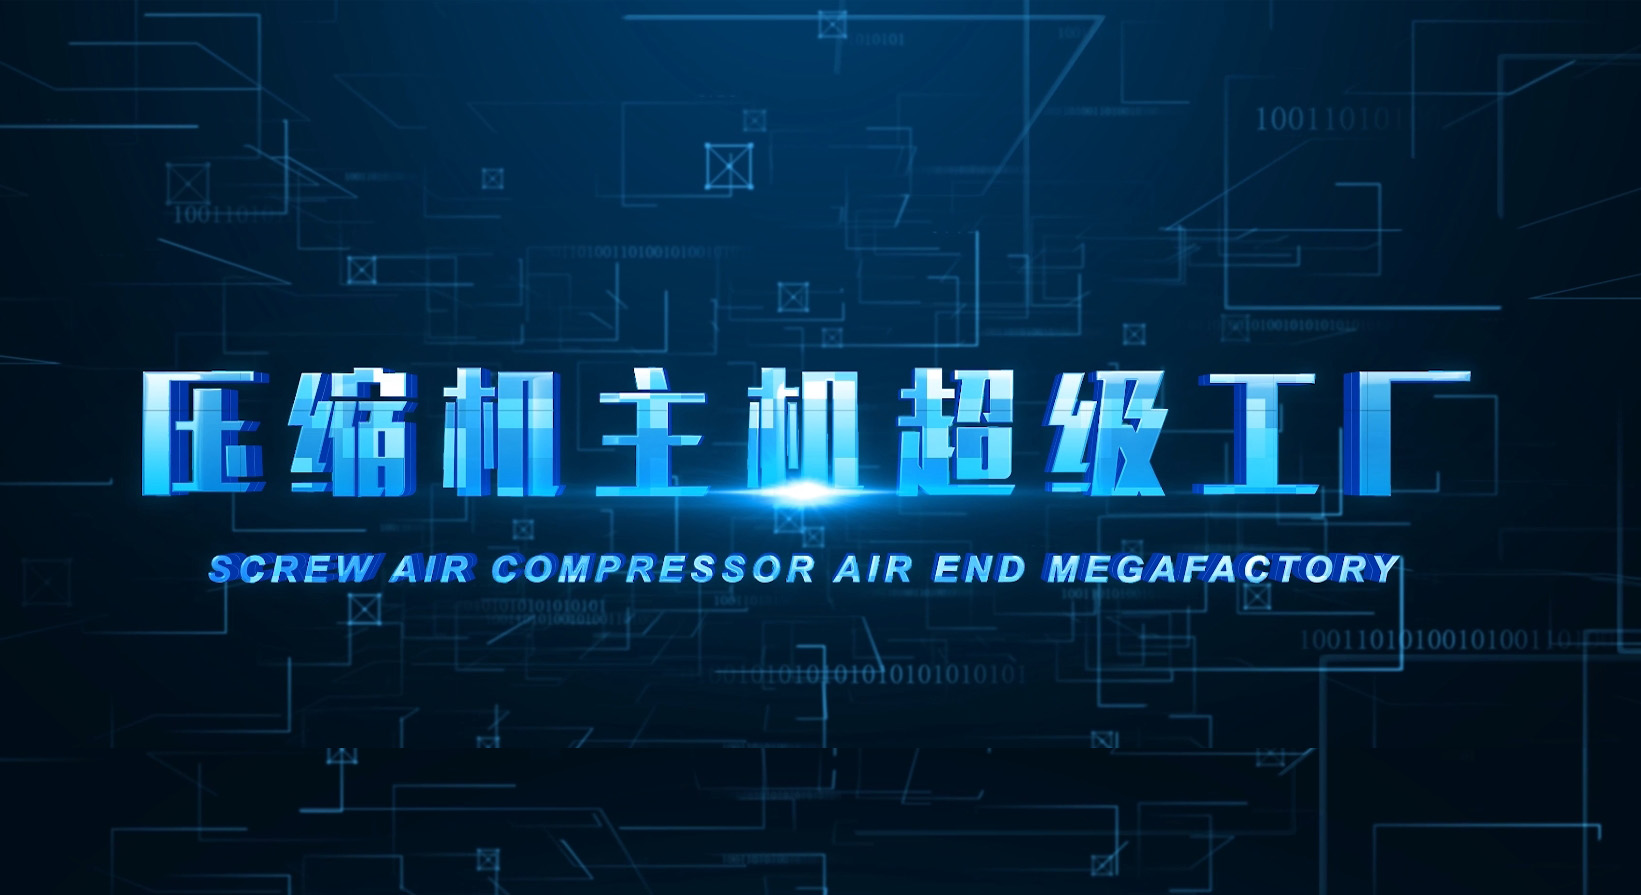 Screw Air Compressor Megafactory”